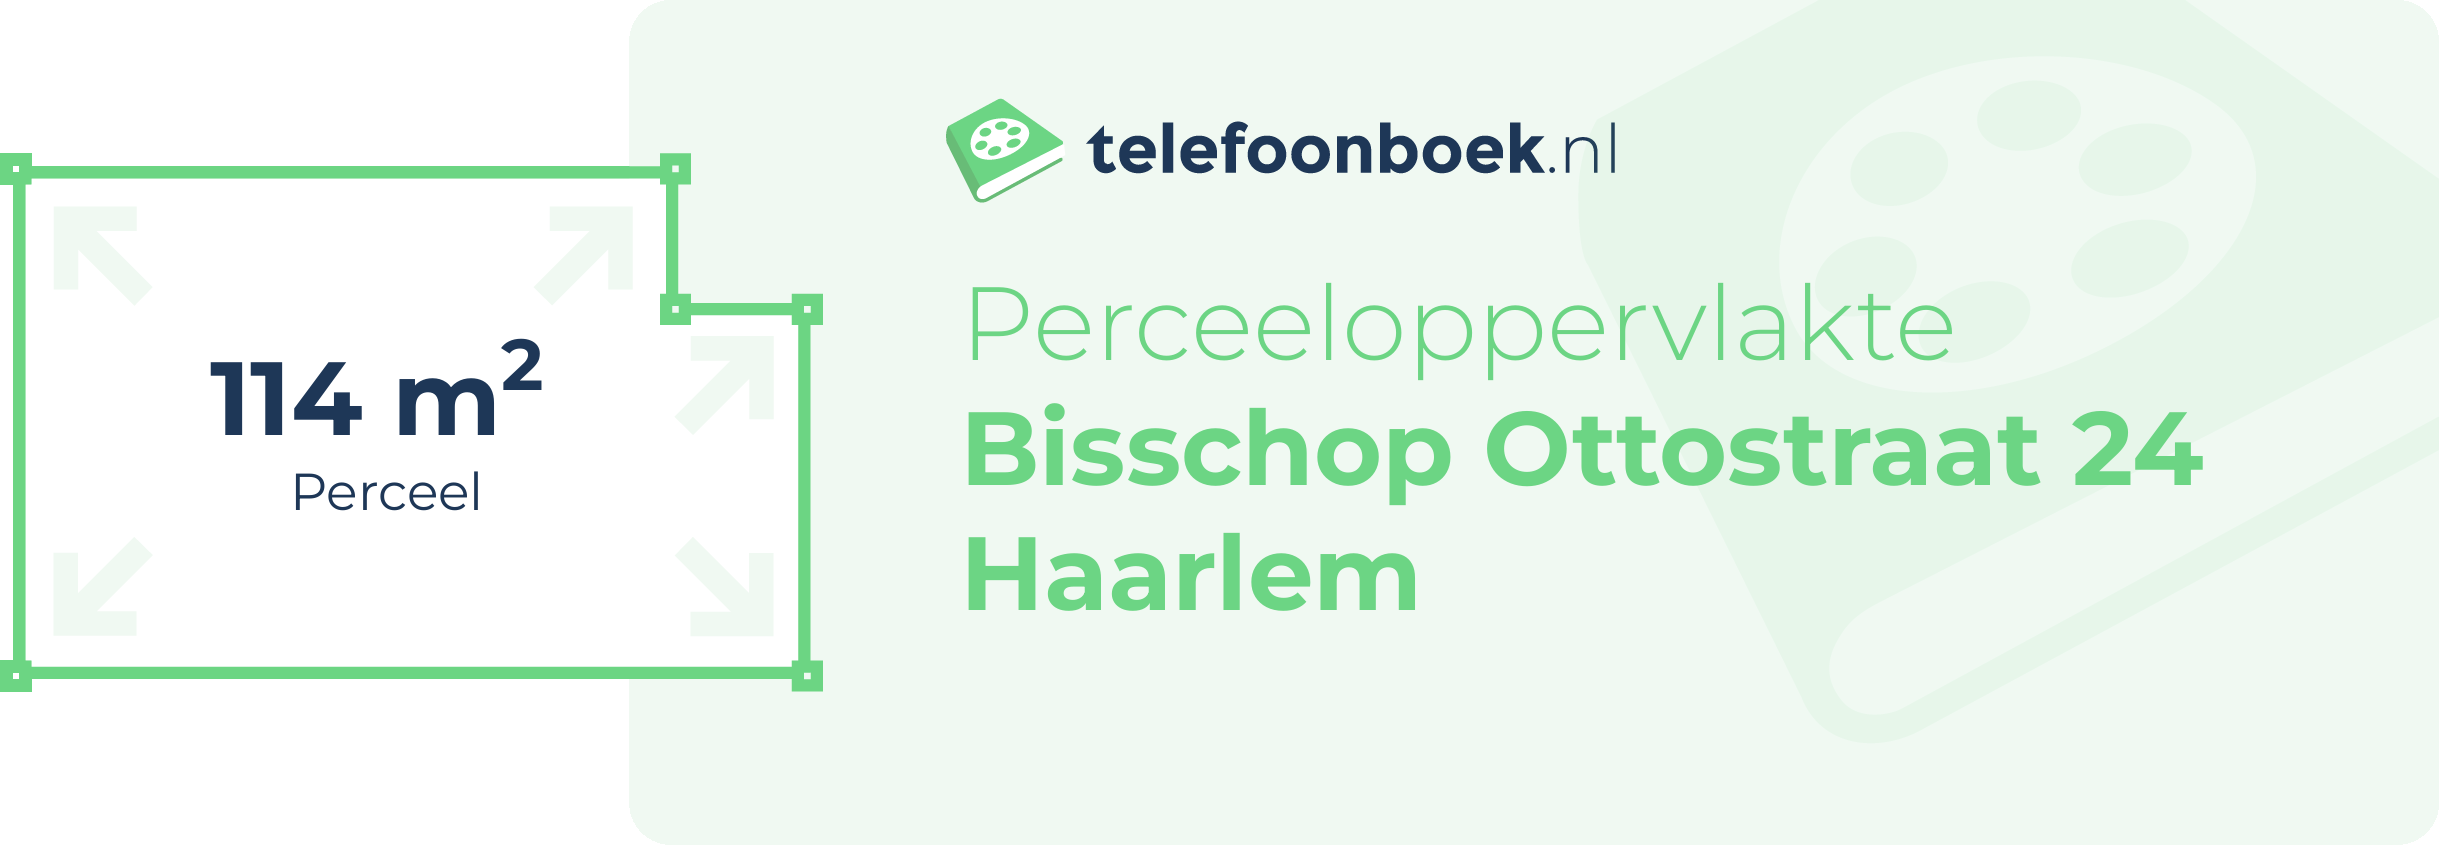 Perceeloppervlakte Bisschop Ottostraat 24 Haarlem